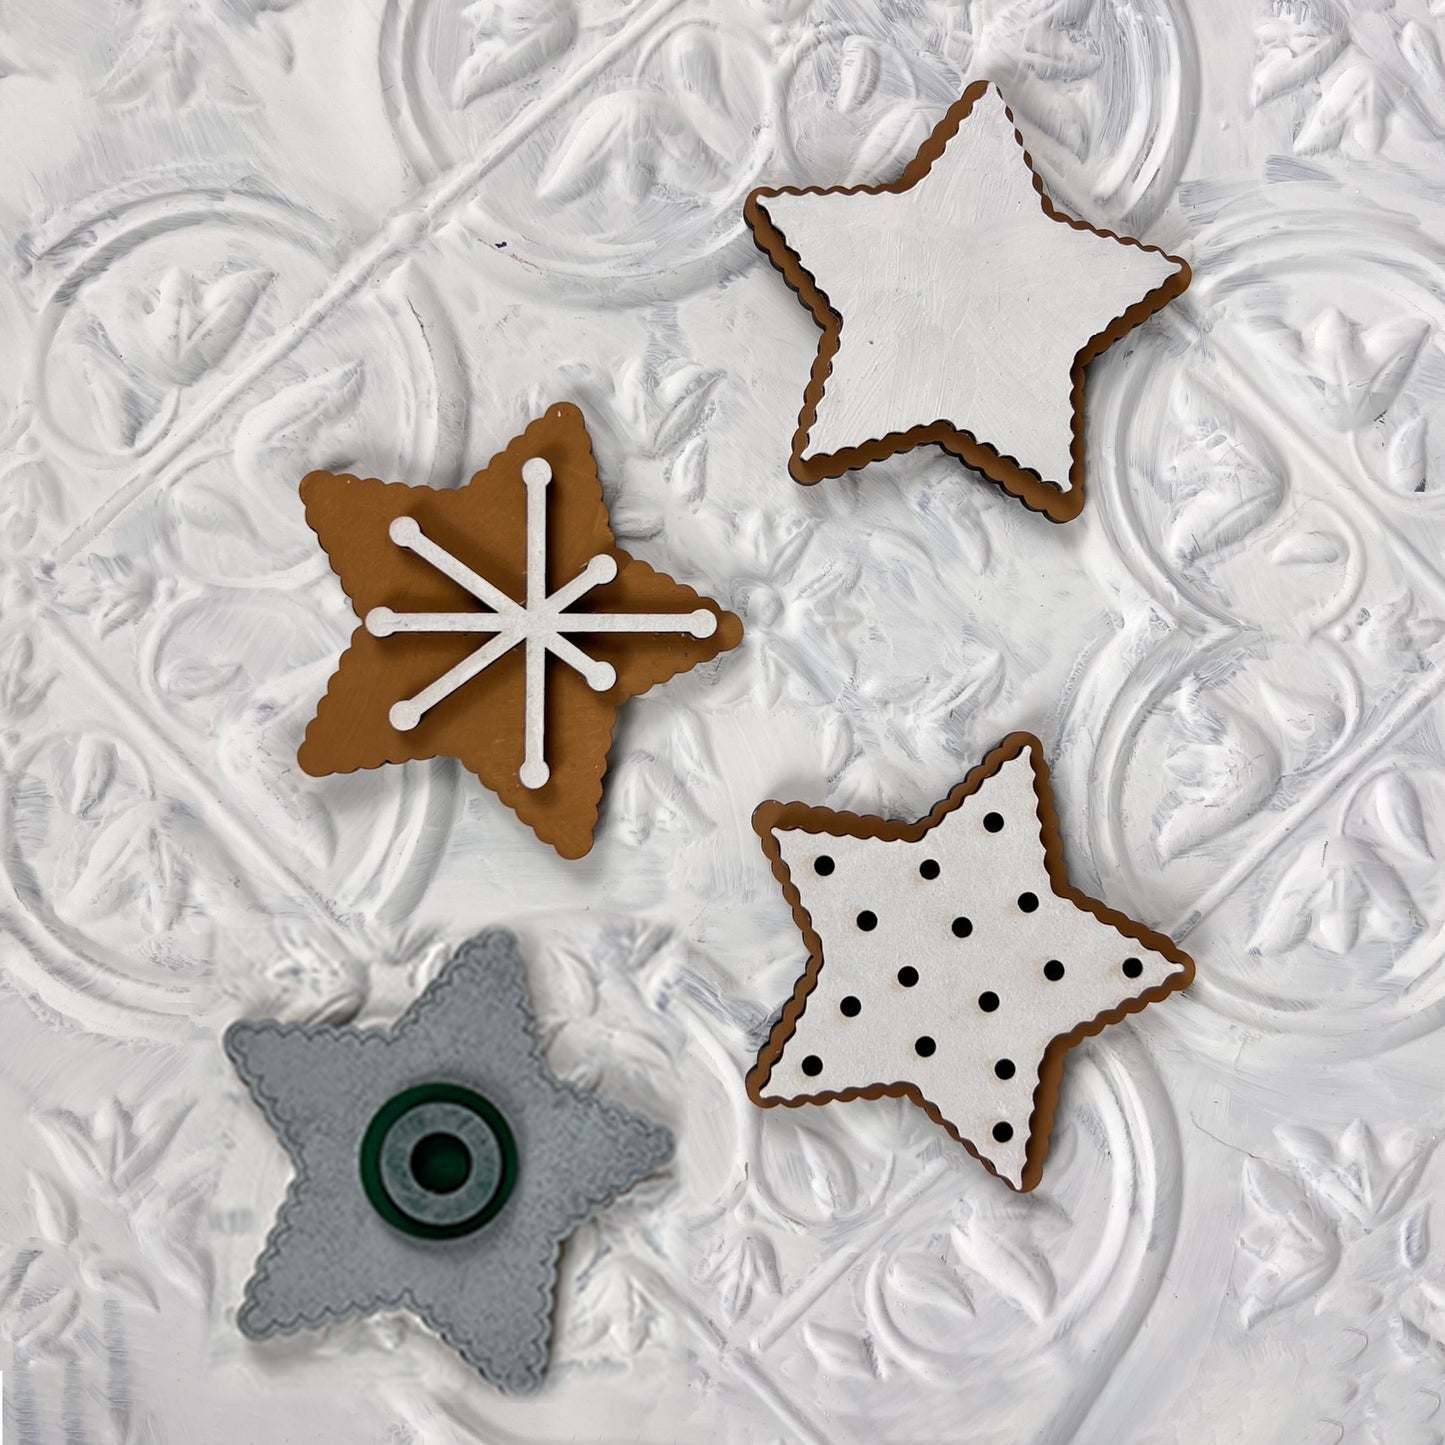 Vintage Santa Cookies Tiered Tray Set